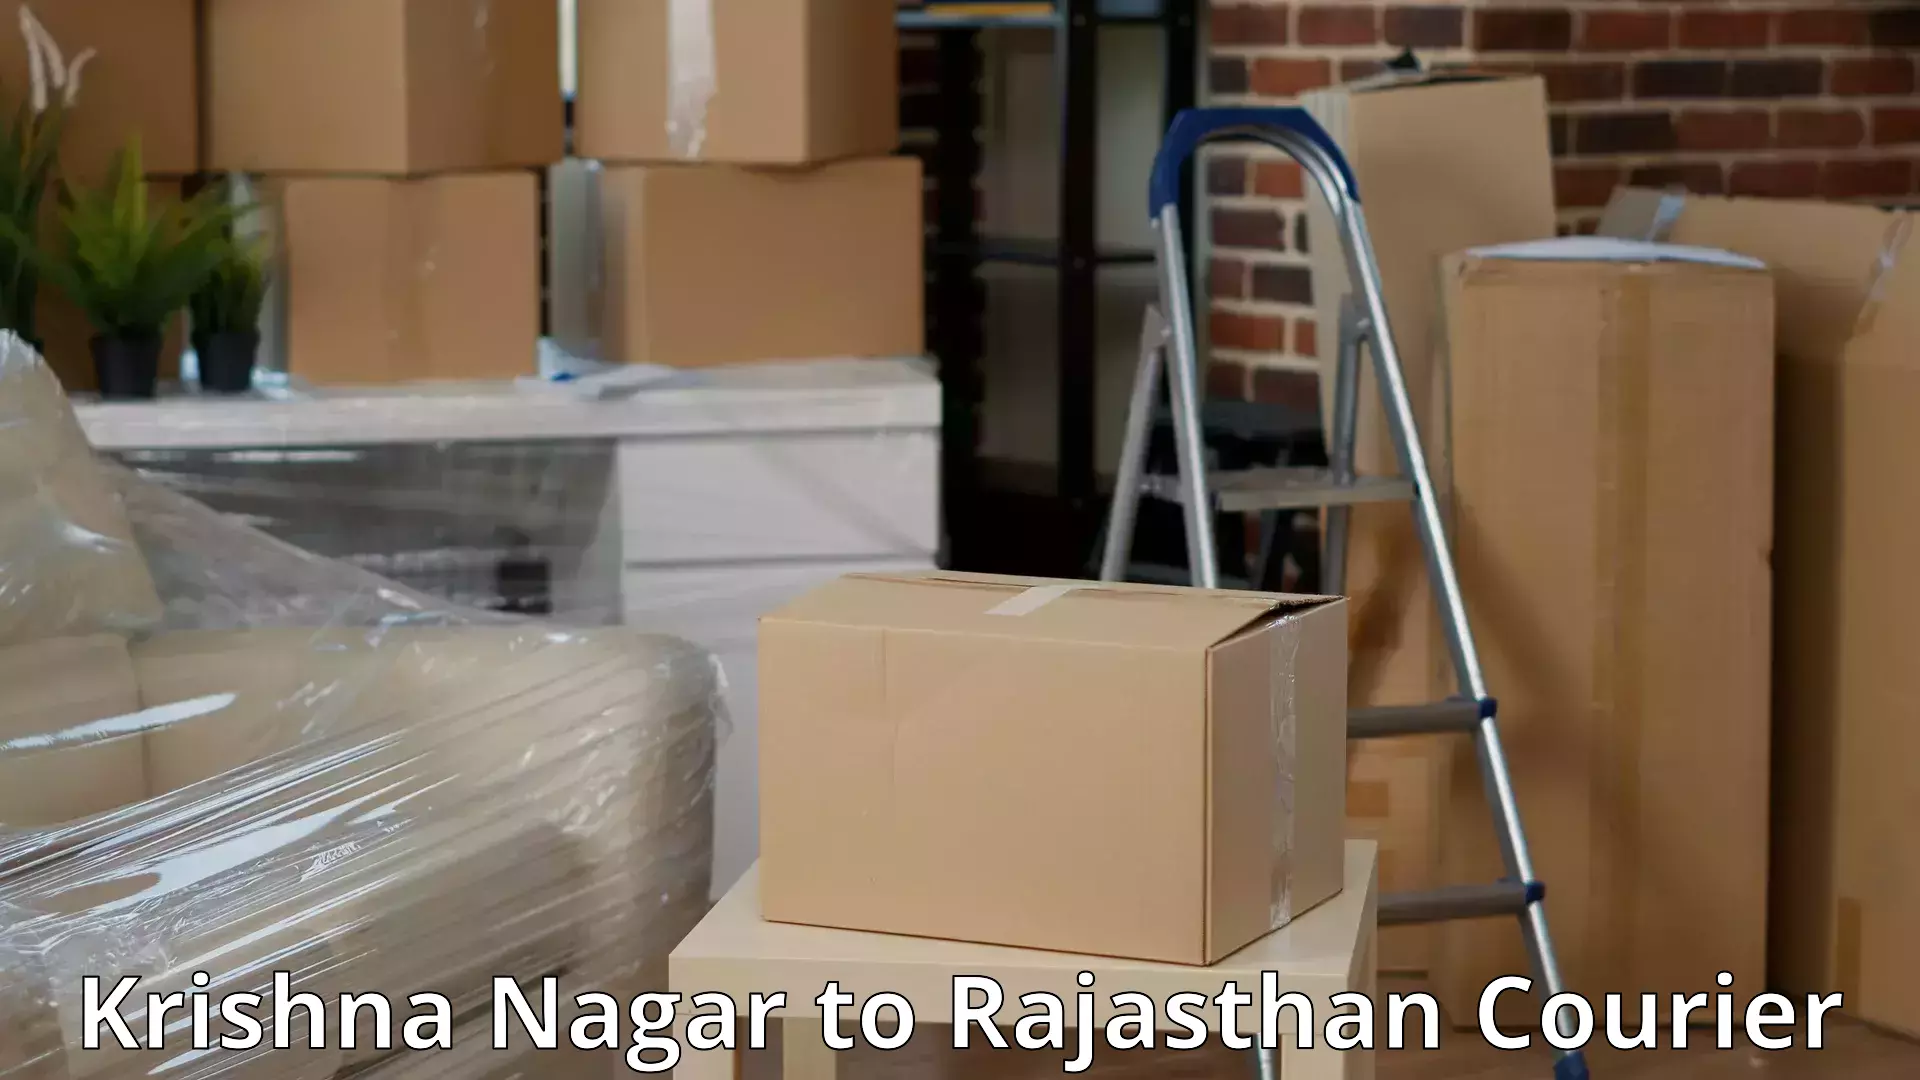 Furniture moving service Krishna Nagar to Rajasthan